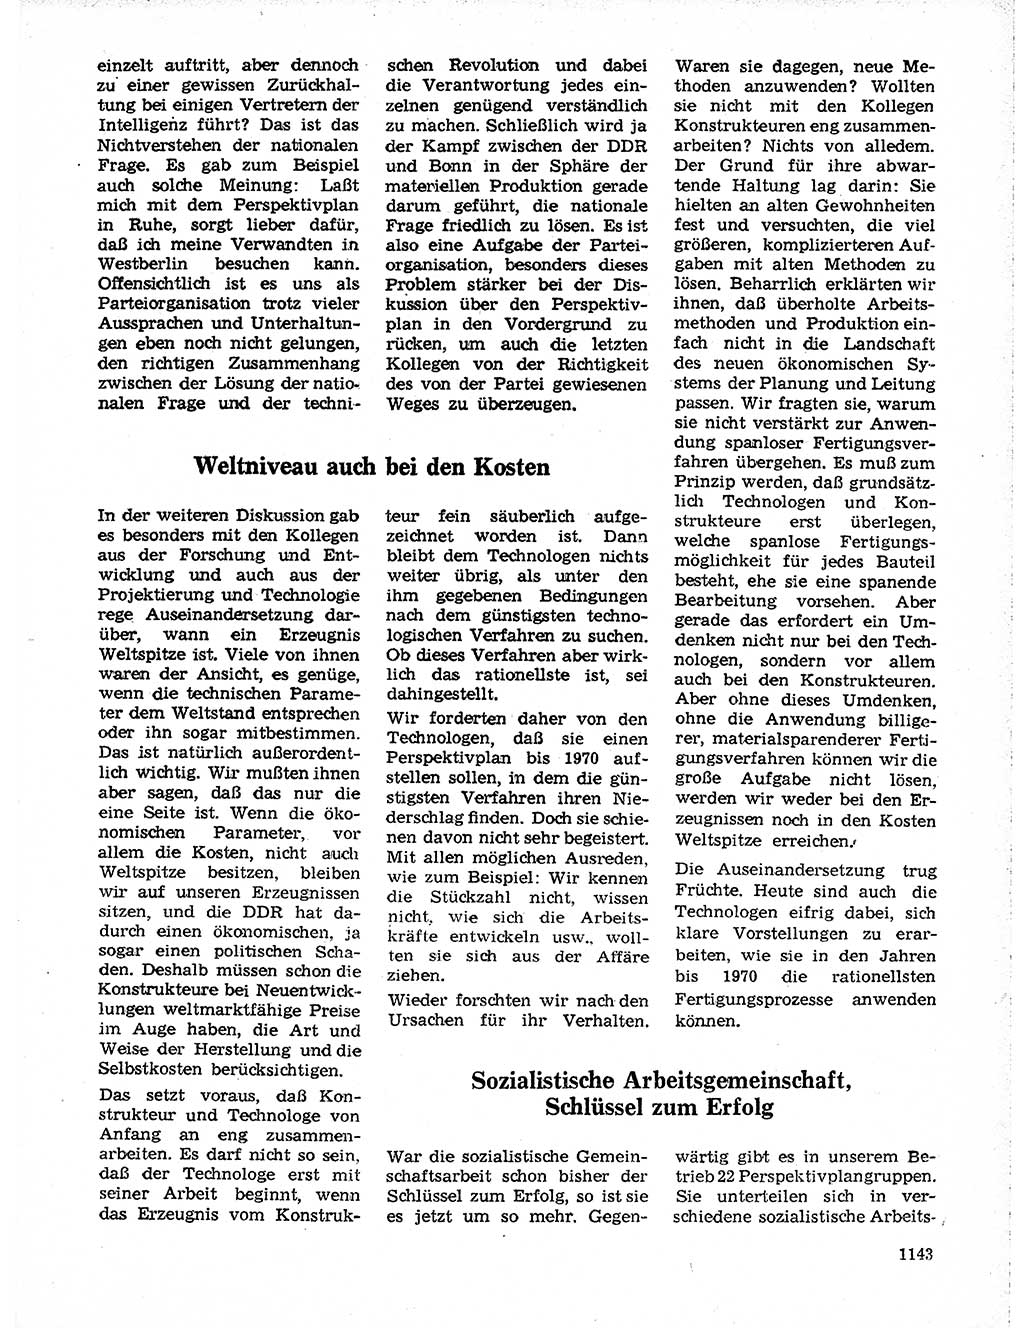 Neuer Weg (NW), Organ des Zentralkomitees (ZK) der SED (Sozialistische Einheitspartei Deutschlands) für Fragen des Parteilebens, 19. Jahrgang [Deutsche Demokratische Republik (DDR)] 1964, Seite 1143 (NW ZK SED DDR 1964, S. 1143)